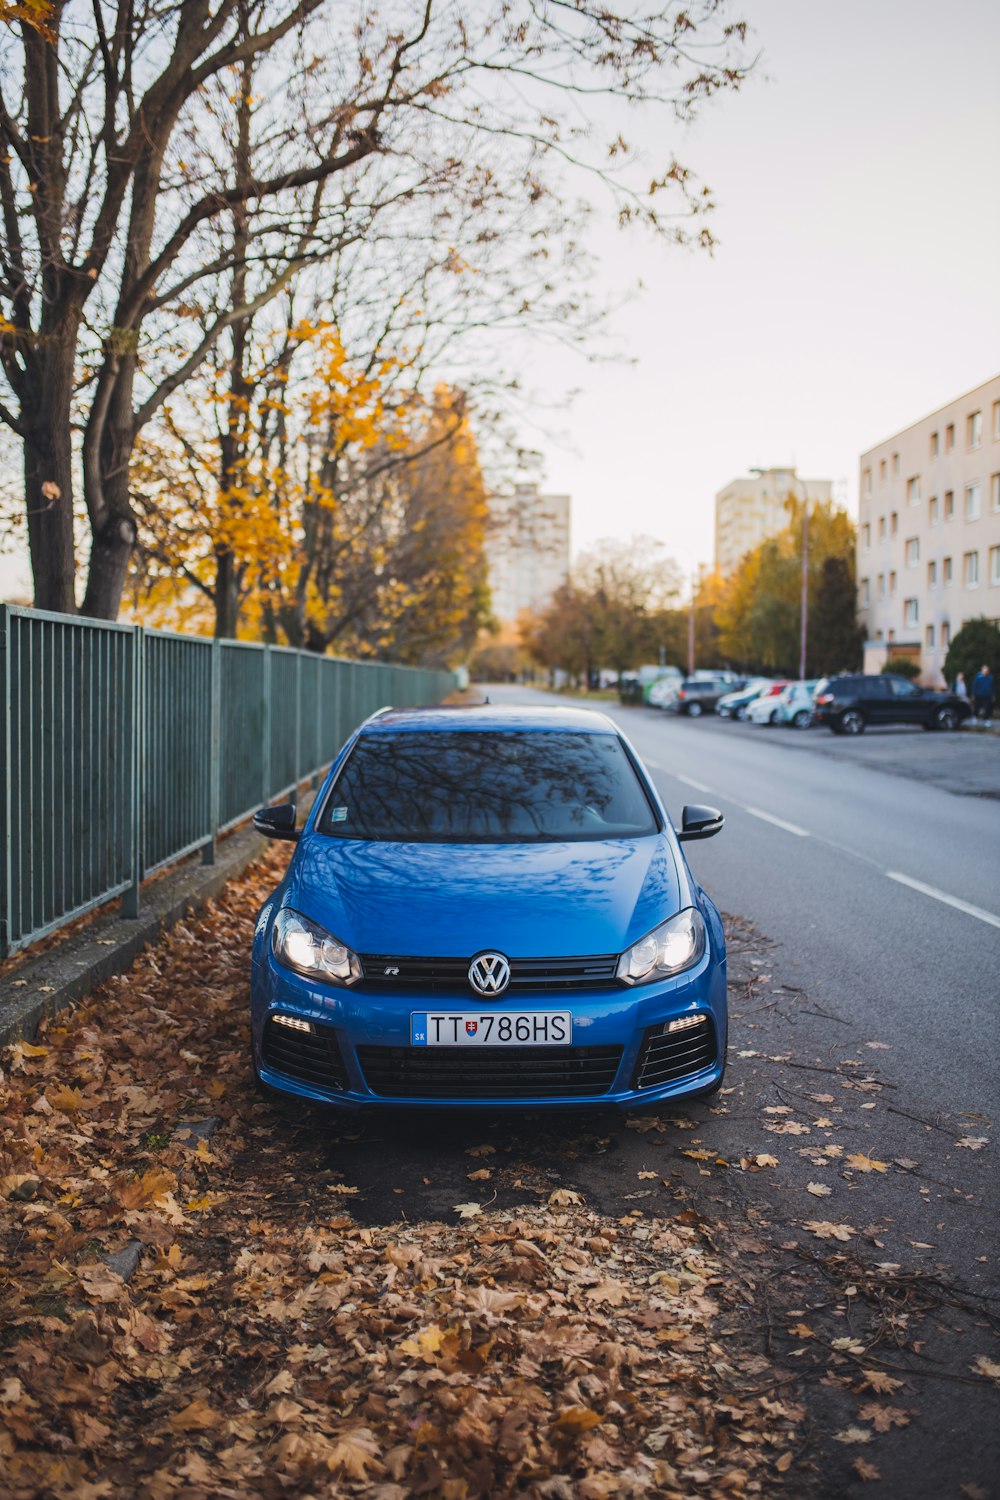 Vehículo Volkswagen azul en carretera asfaltada